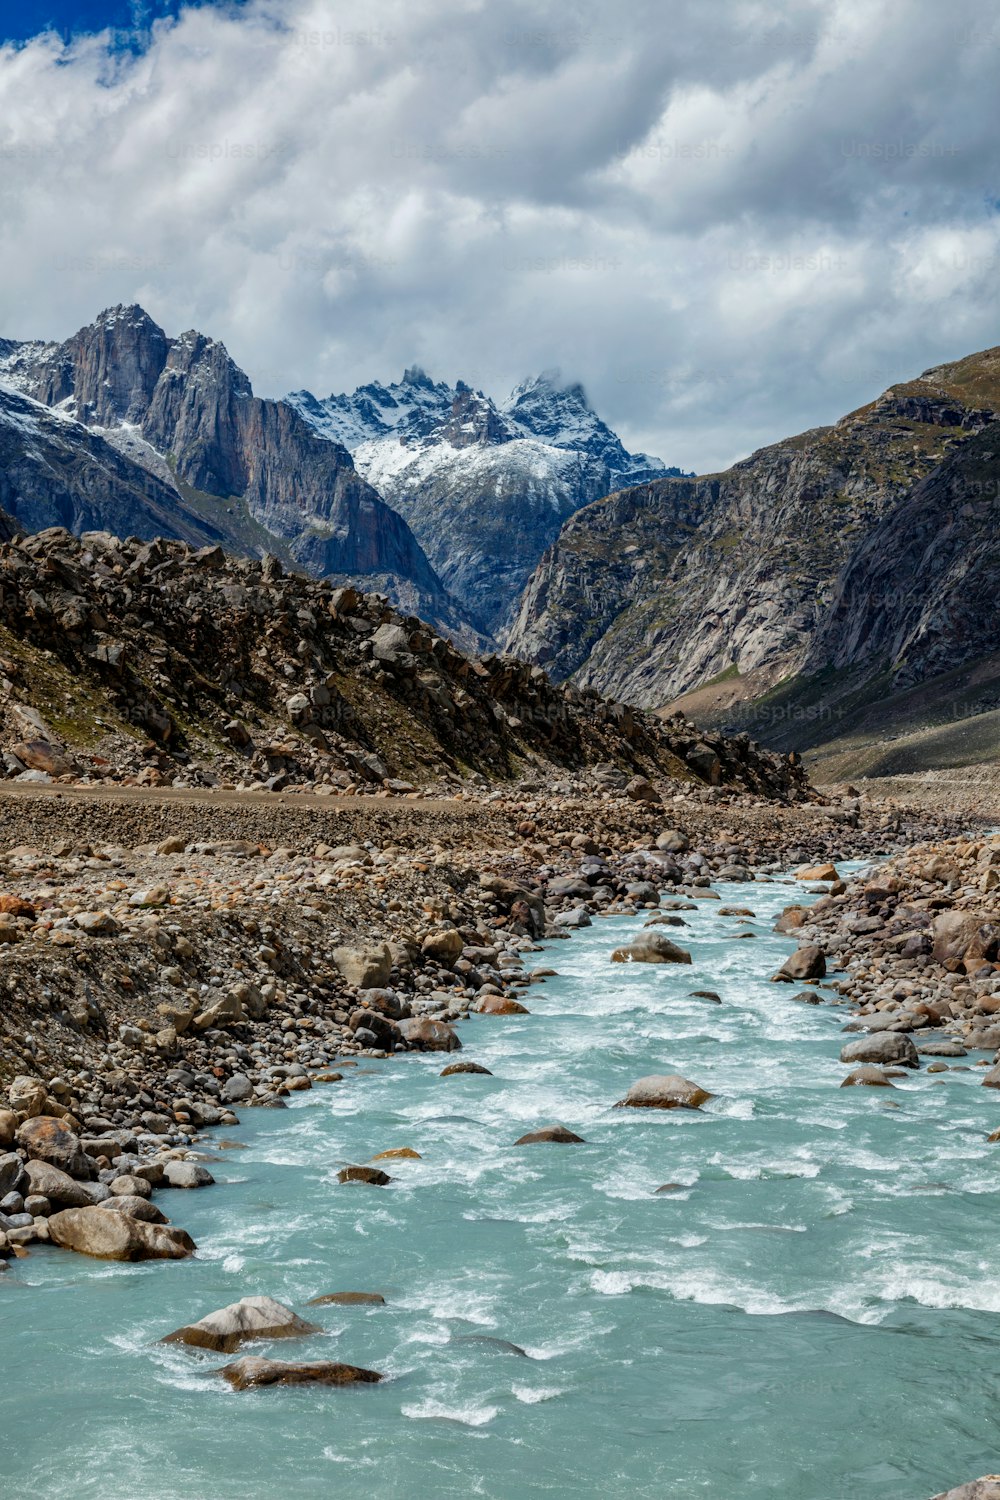 Rivière Chandra dans la vallée de Lahaul dans l’Himalaya indien. Himachal Pradesh, Inde Inde